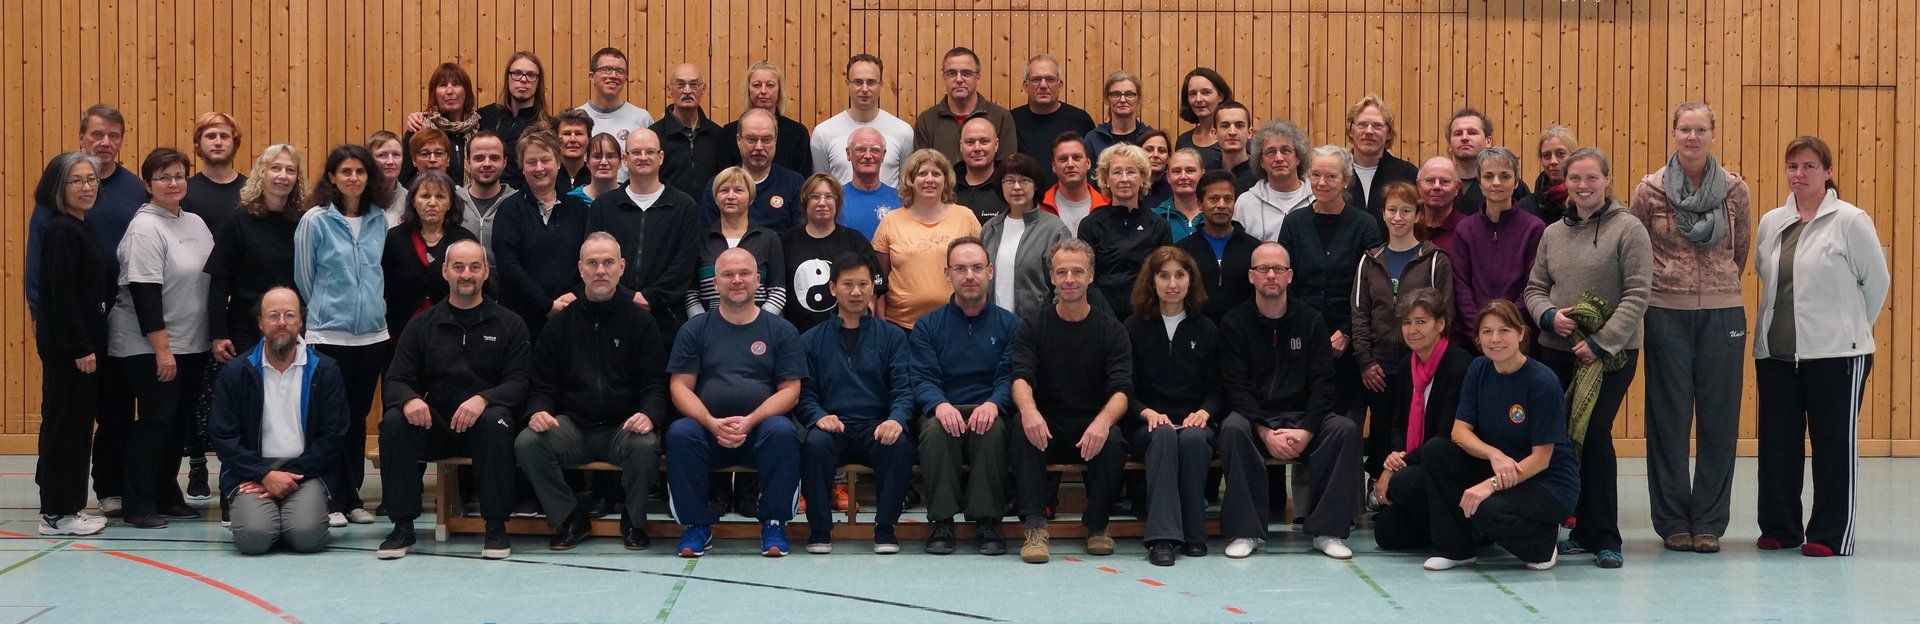 Gruppenfoto vom Seminar mit Großmeister Yang Jun 2015 in Kiel